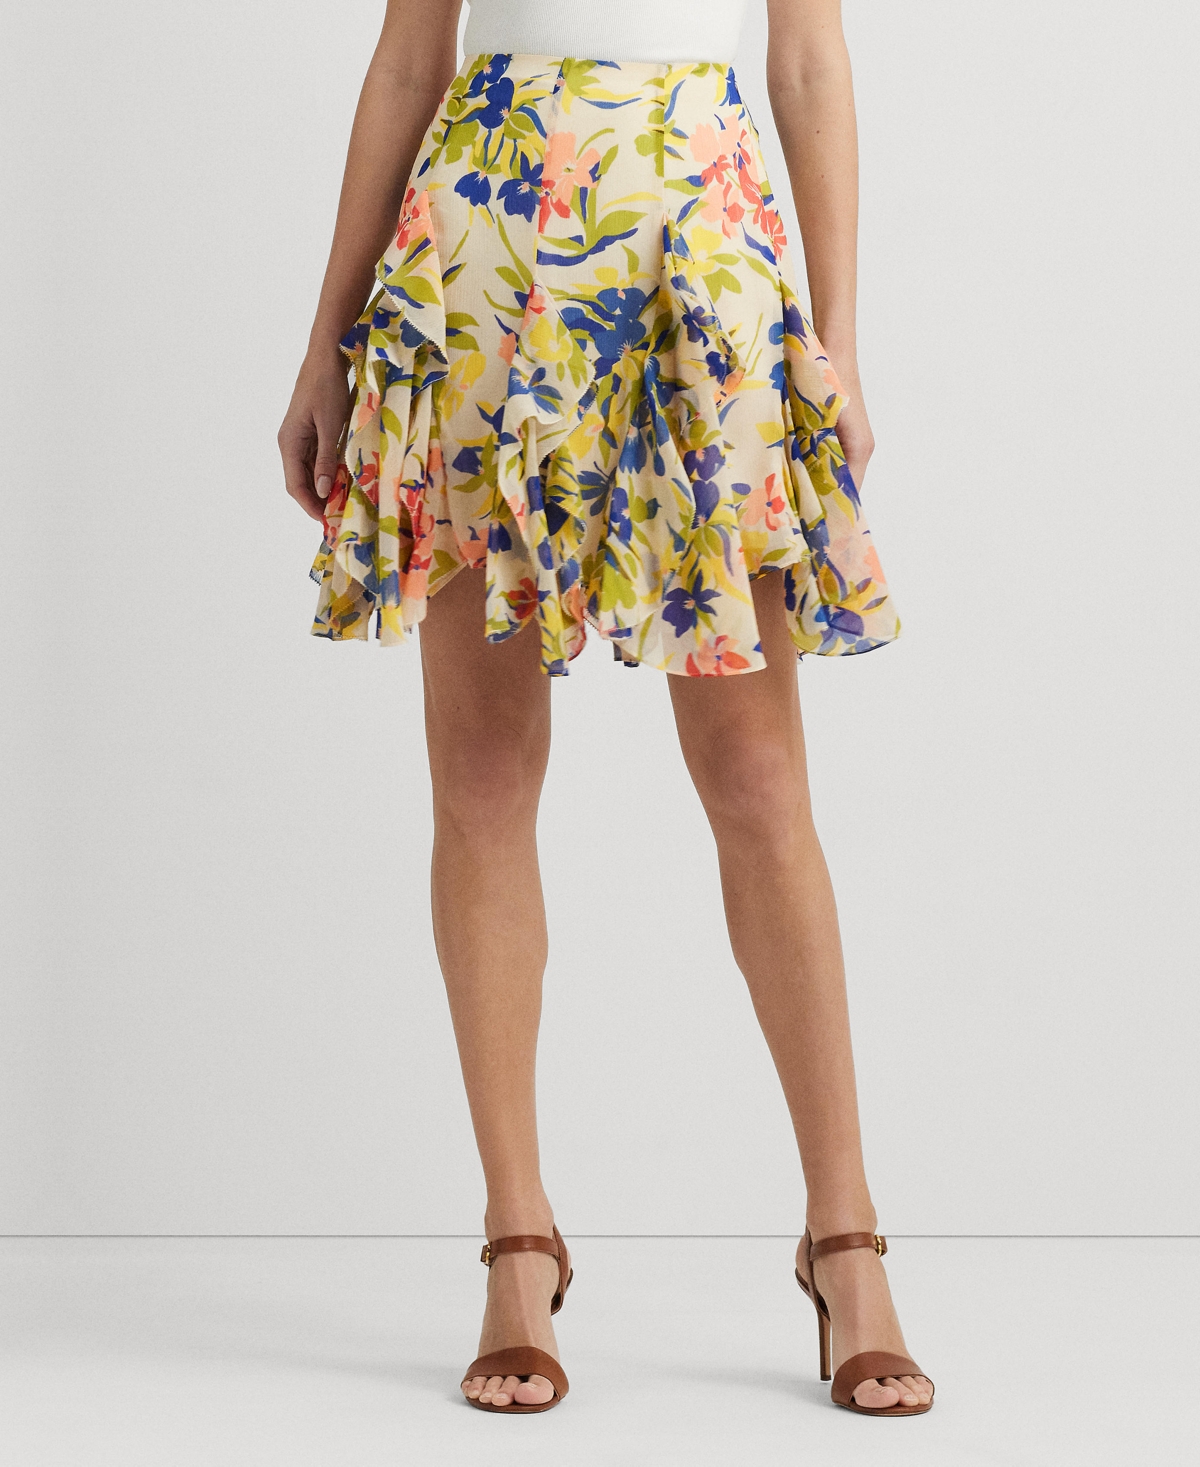 Women's Ruffled Floral Miniskirt - Cream Multi